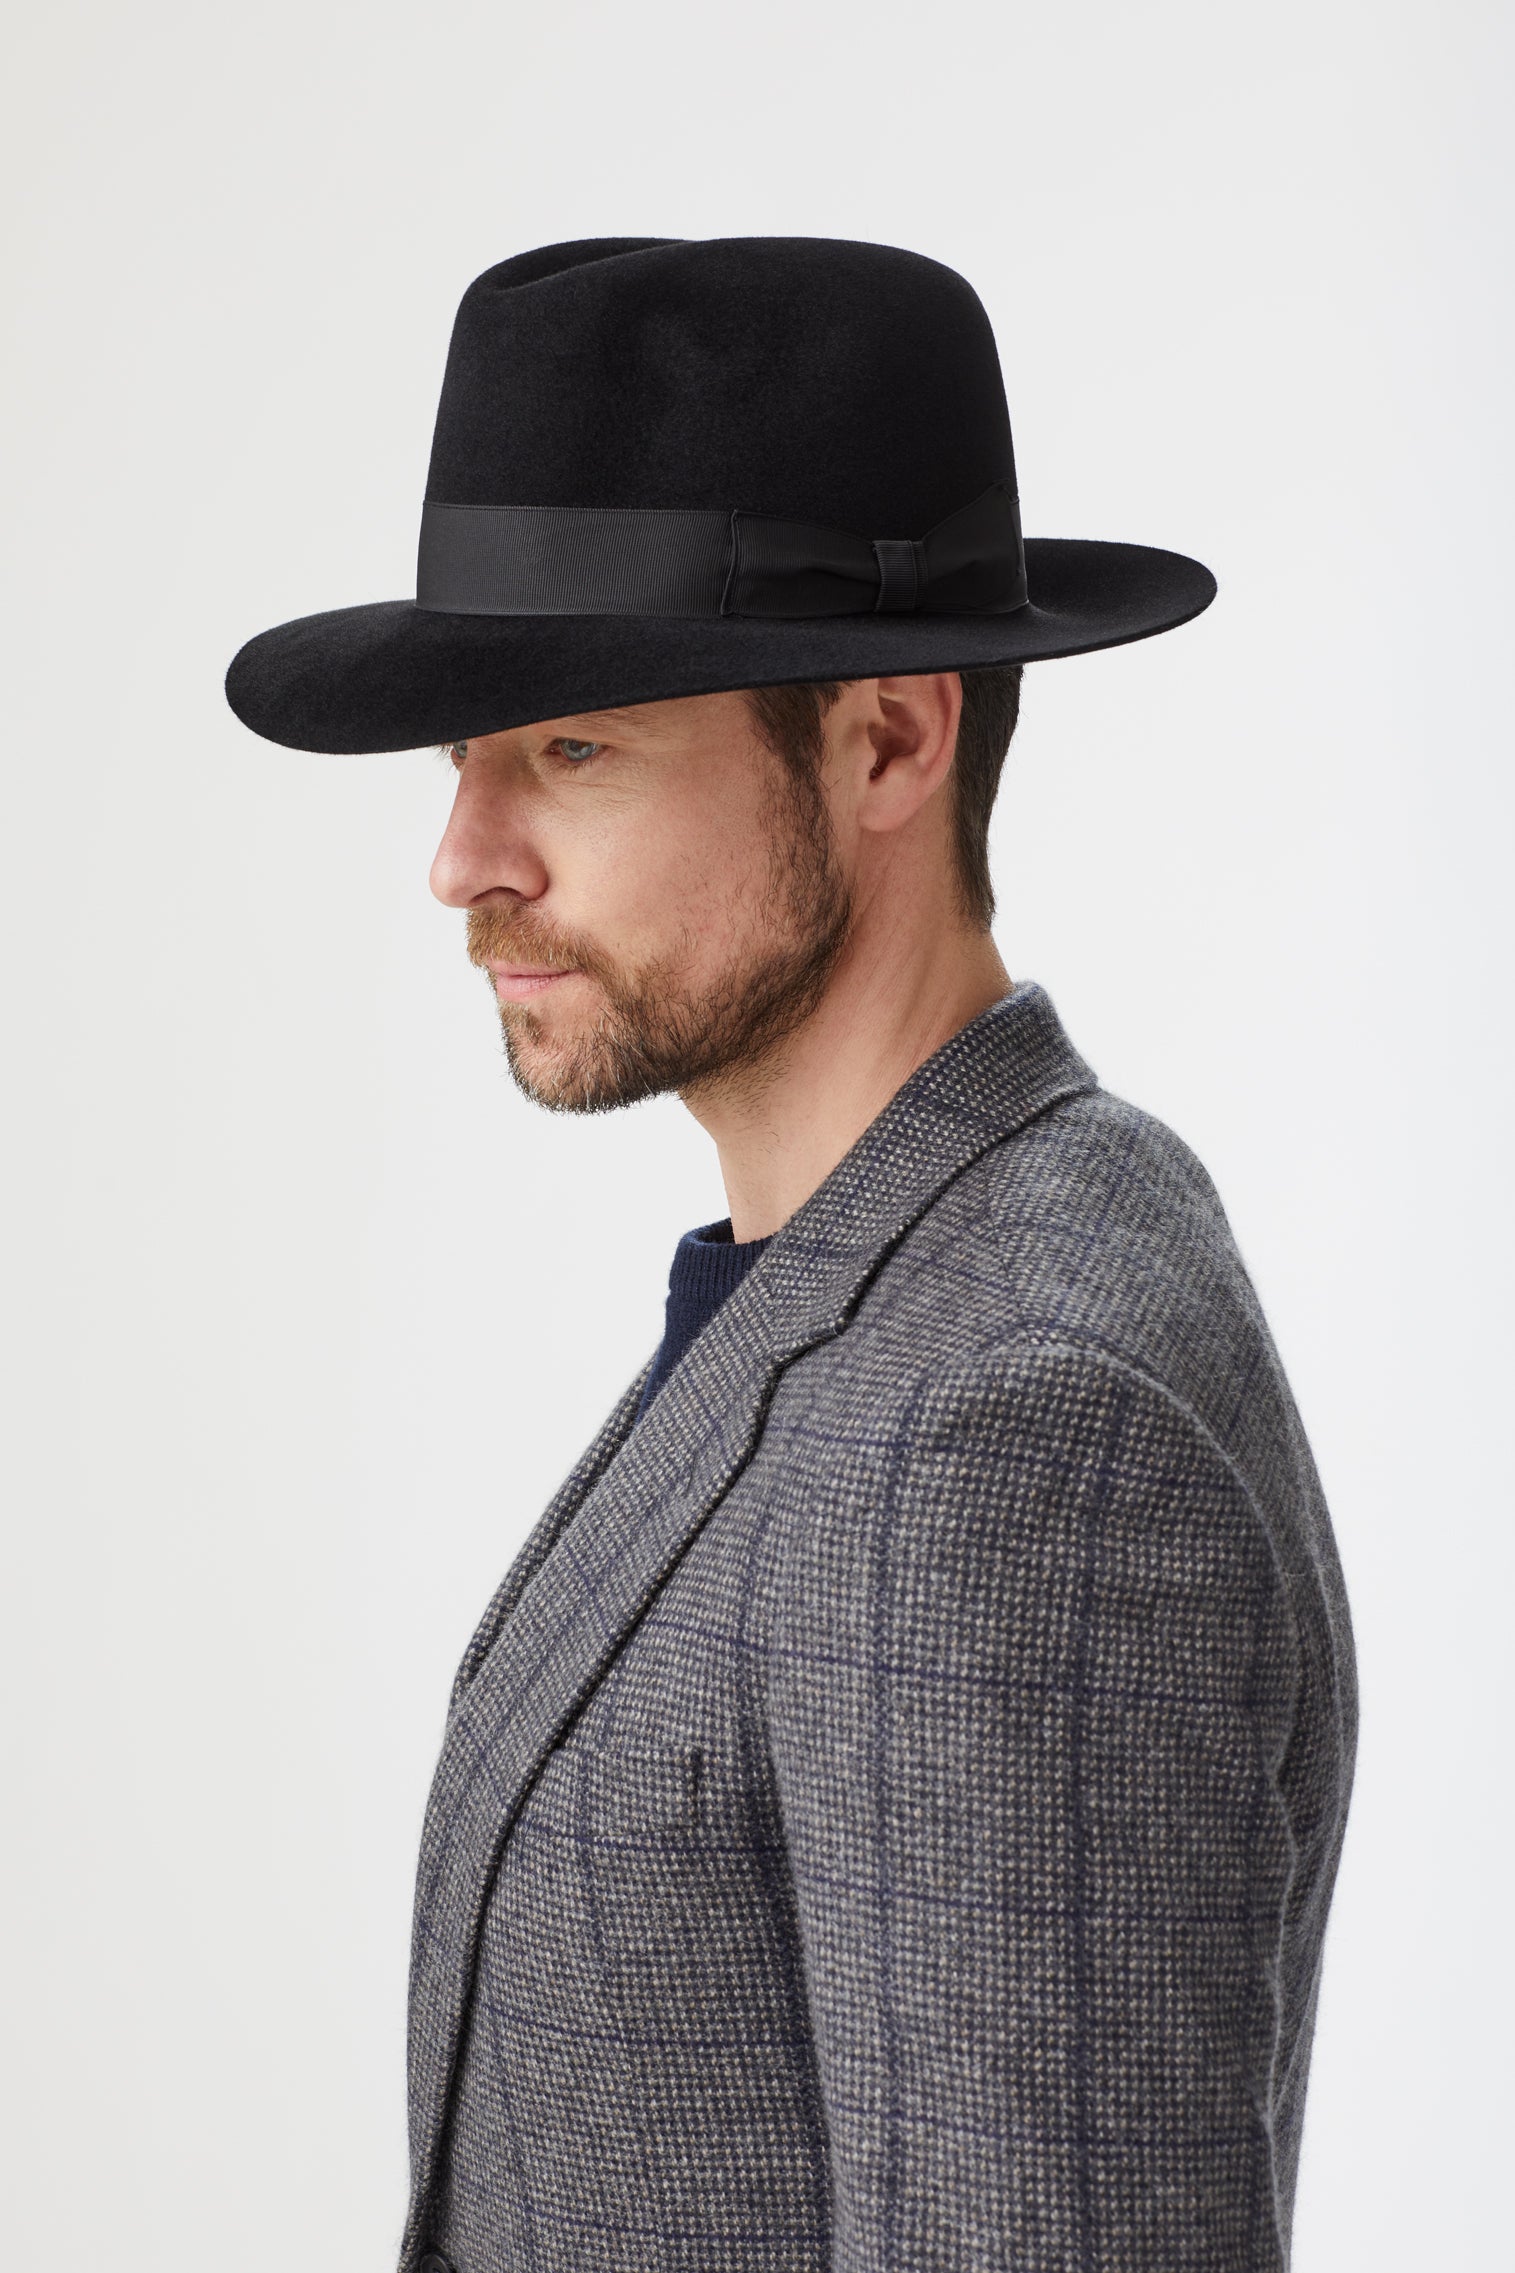 Haydock Black Fedora - Best Selling Hats - Lock & Co. Hatters London UK